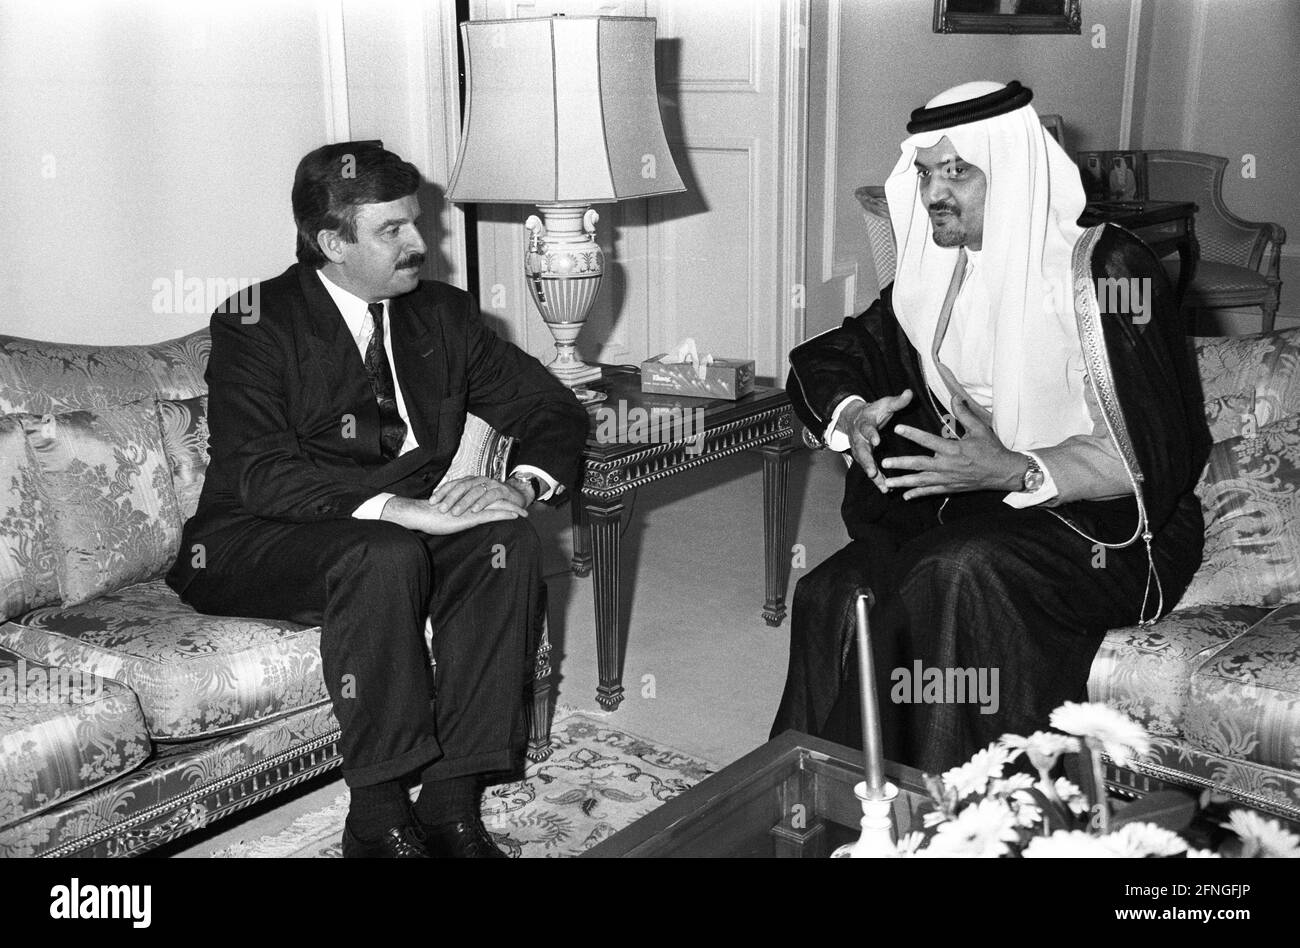 Germania, Bonn, 10.10.1990 Archivio n.: 20-69-12 Visita del ministro degli Esteri Saudita Principe Faisal Foto: Juergen Moellemann e il principe Faisal [traduzione automatizzata] Foto Stock